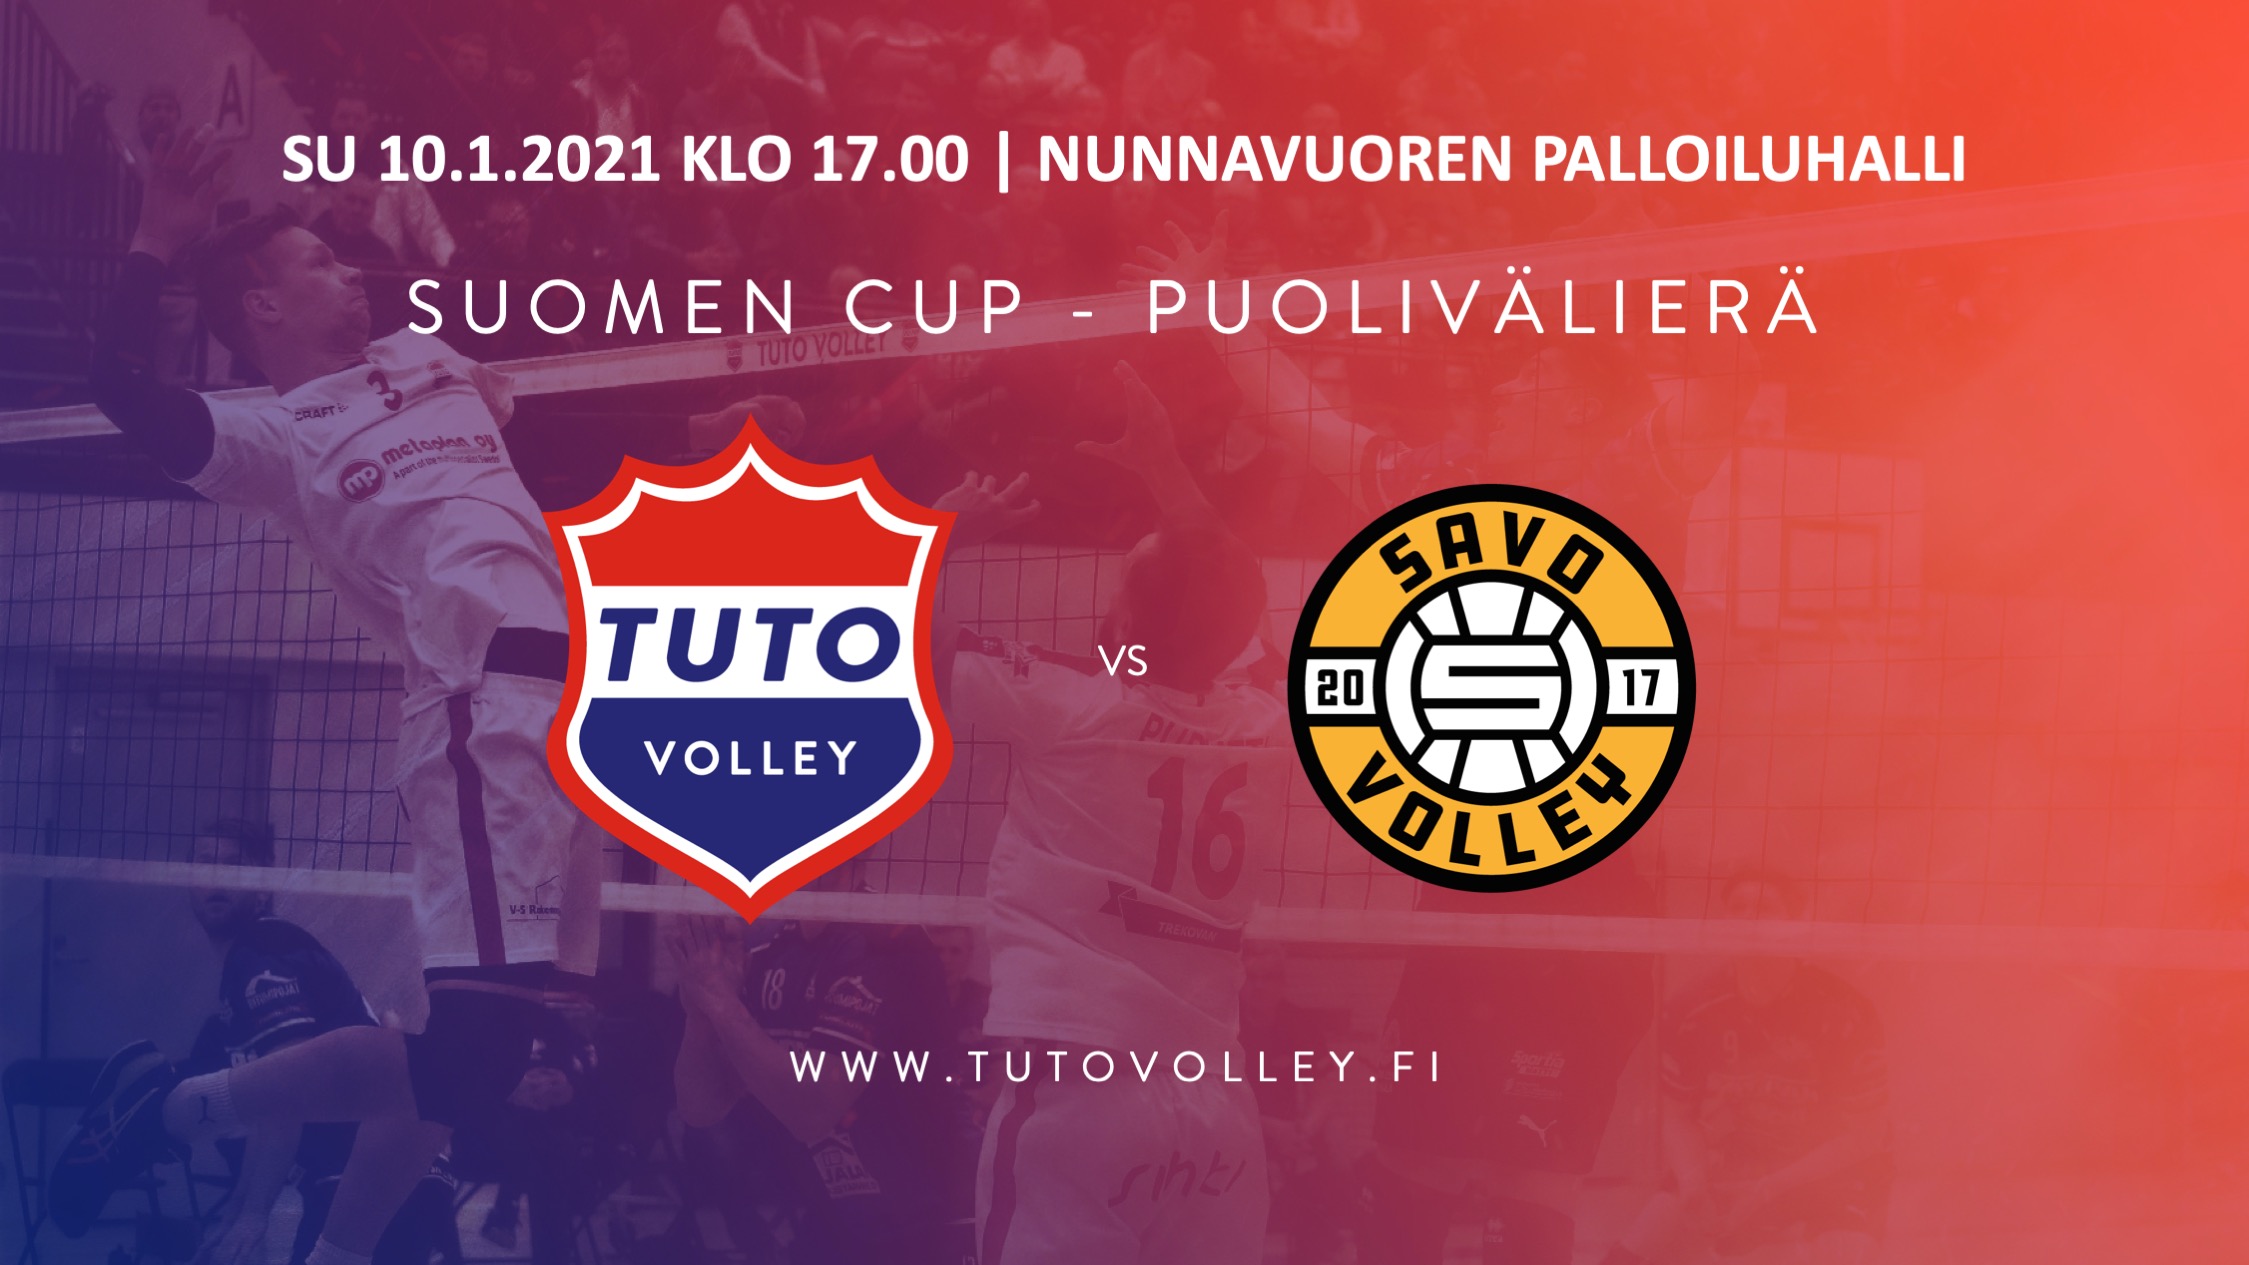 TUTO Volley haastaa liigakärjen Suomen Cupin puolivälierässä - TUTO Volley